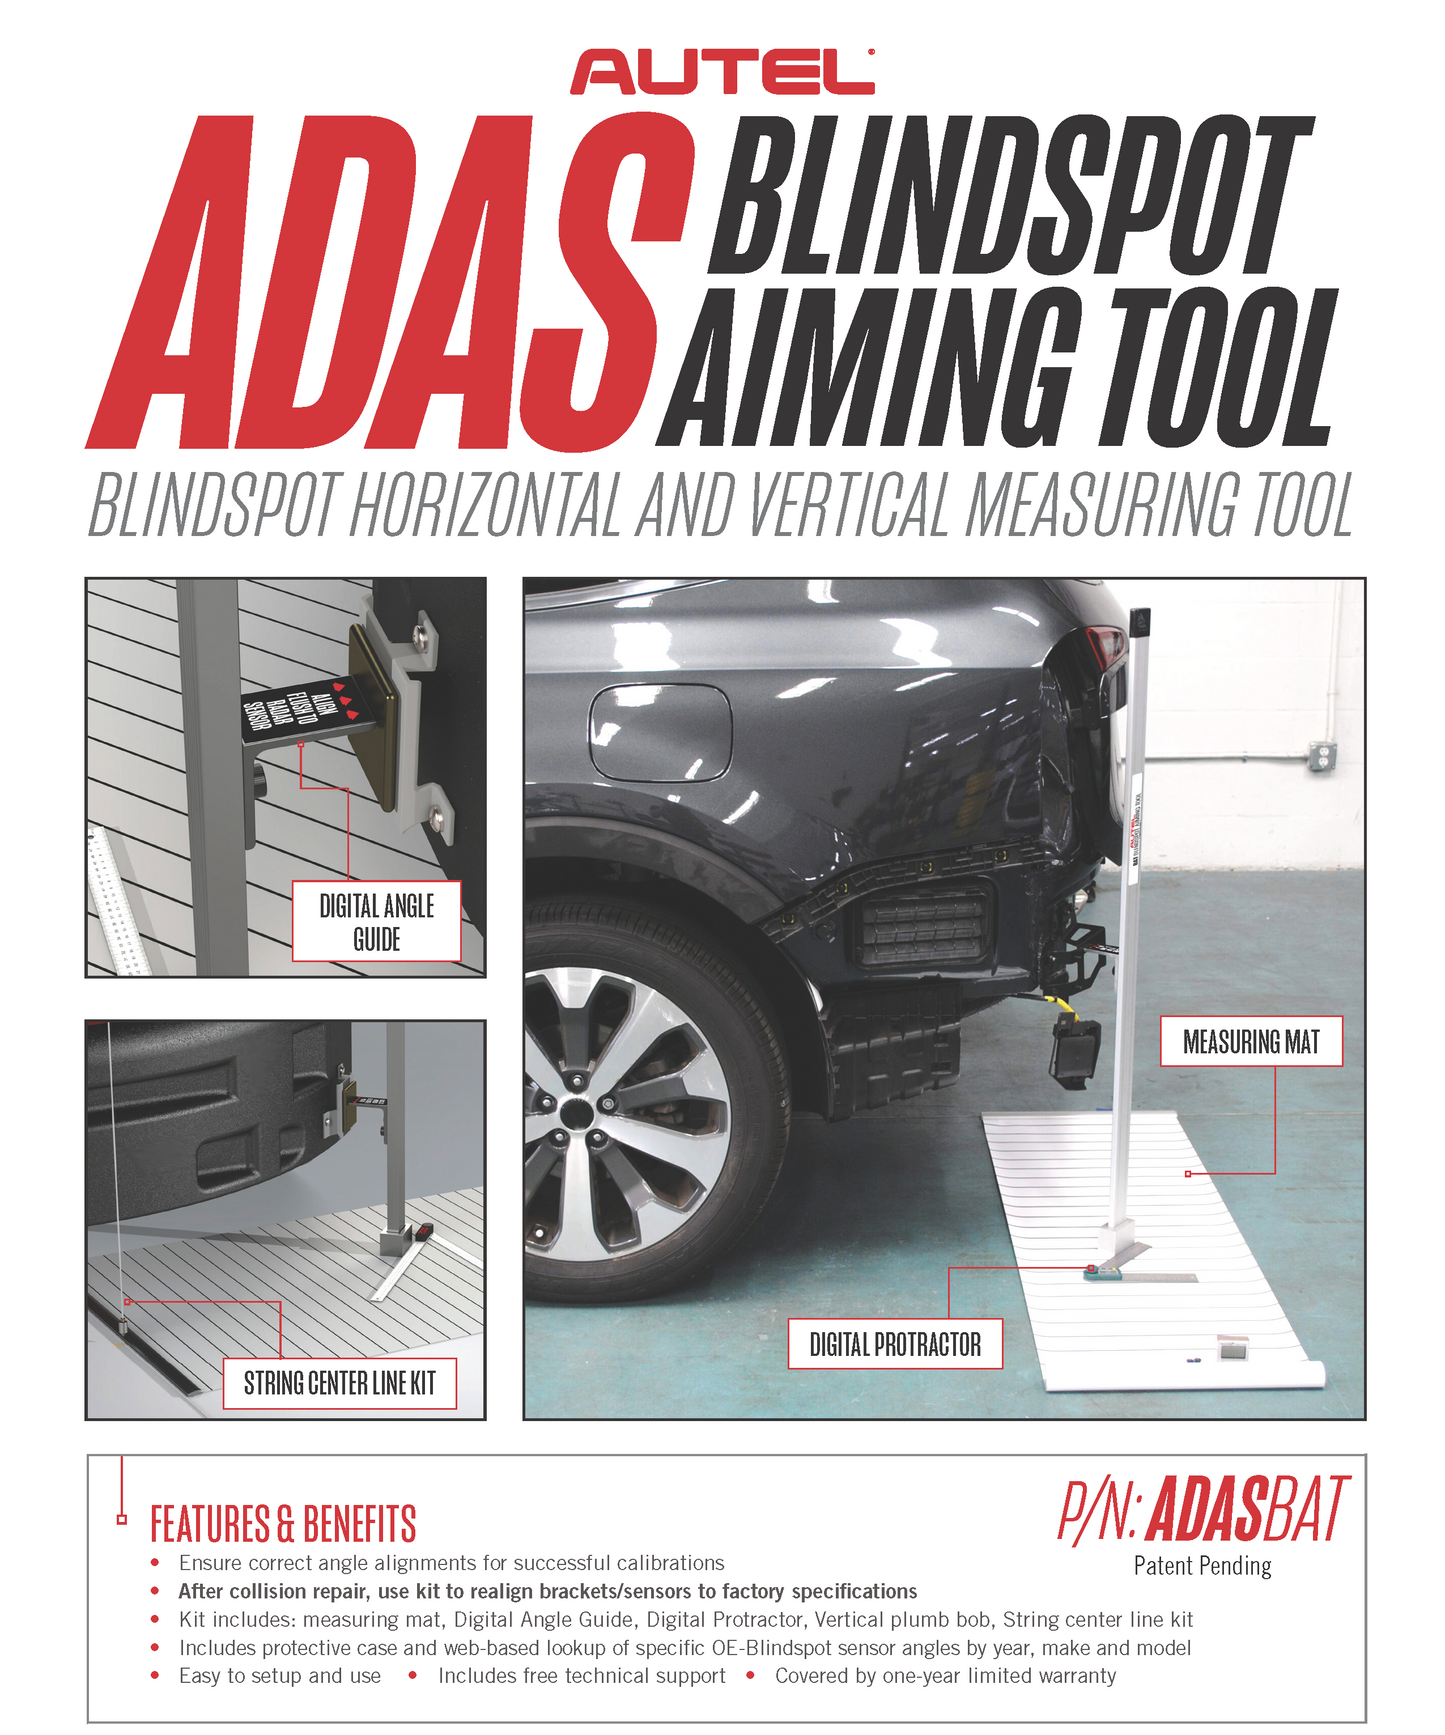 Autel ADASBAT: ADAS Blind Spot Aiming Tool Kit